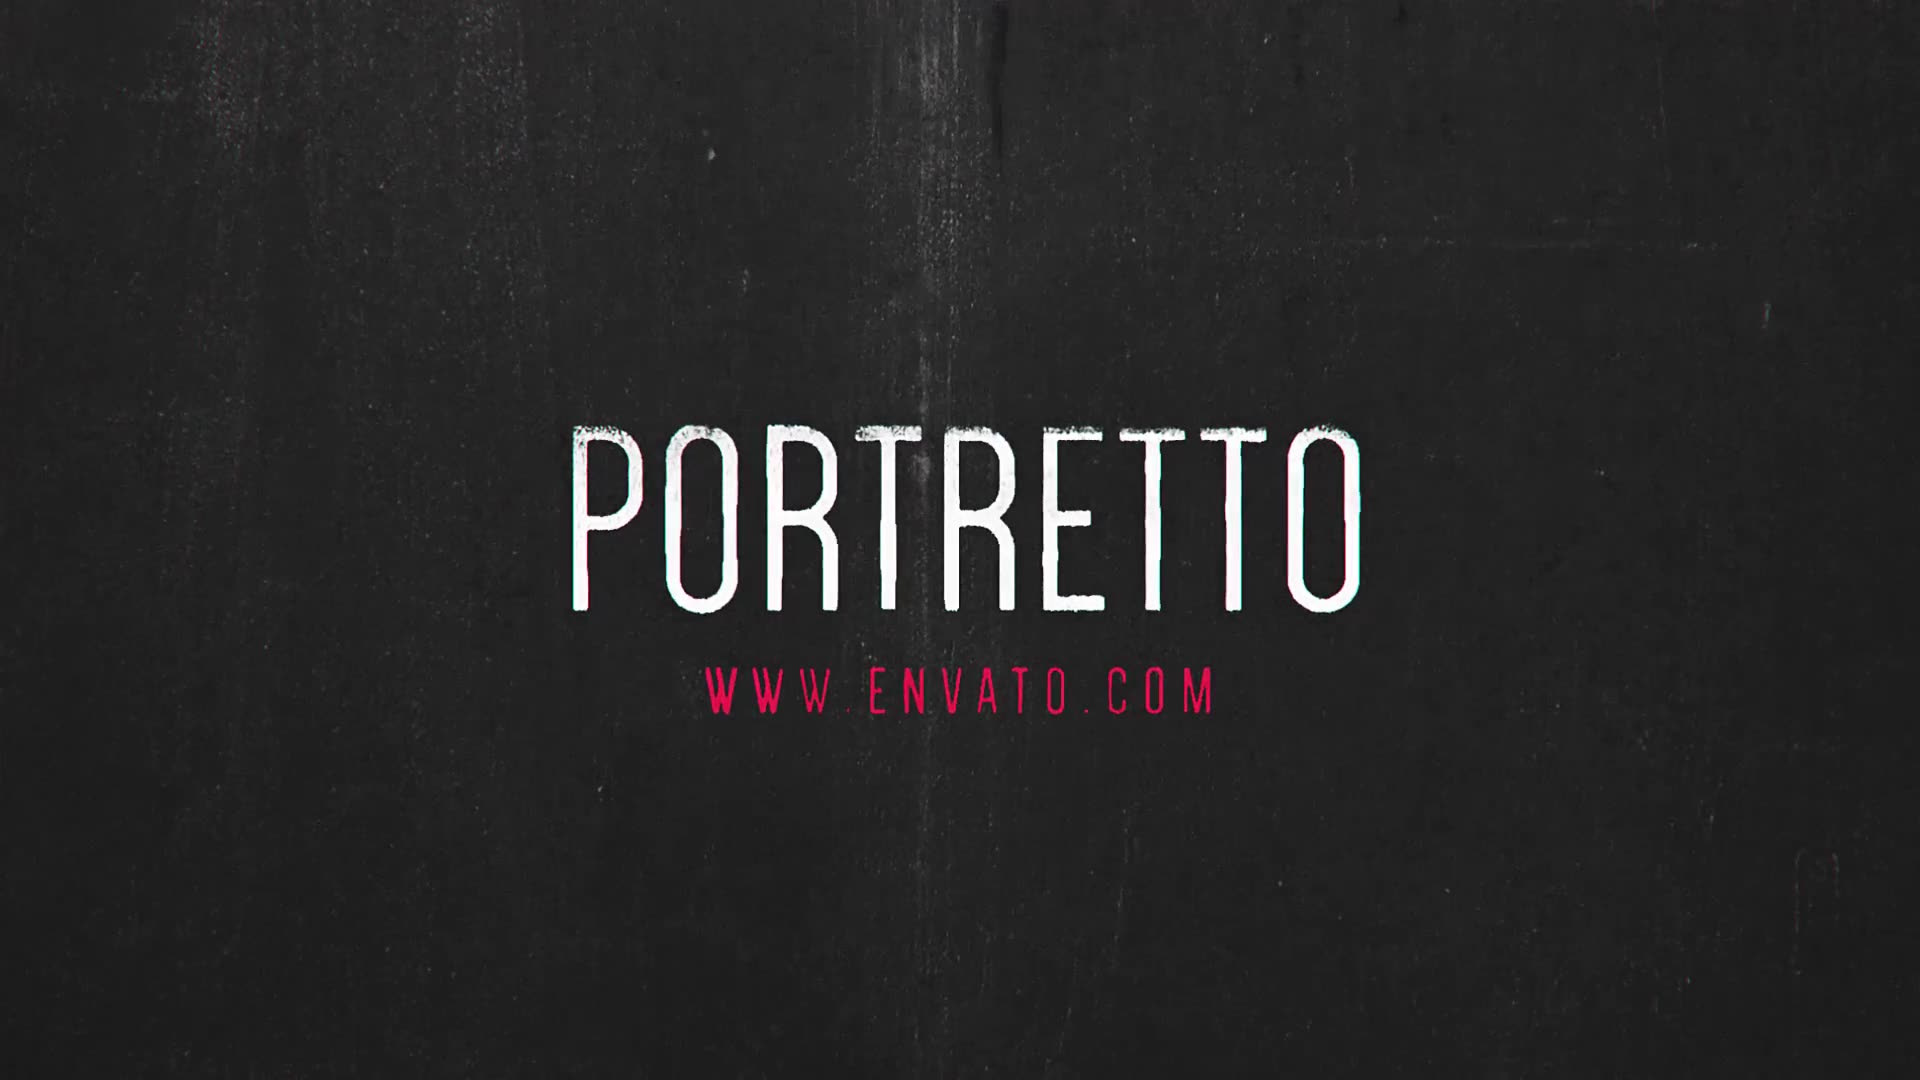 Portretto // Grunge Slideshow - Download Videohive 17277802